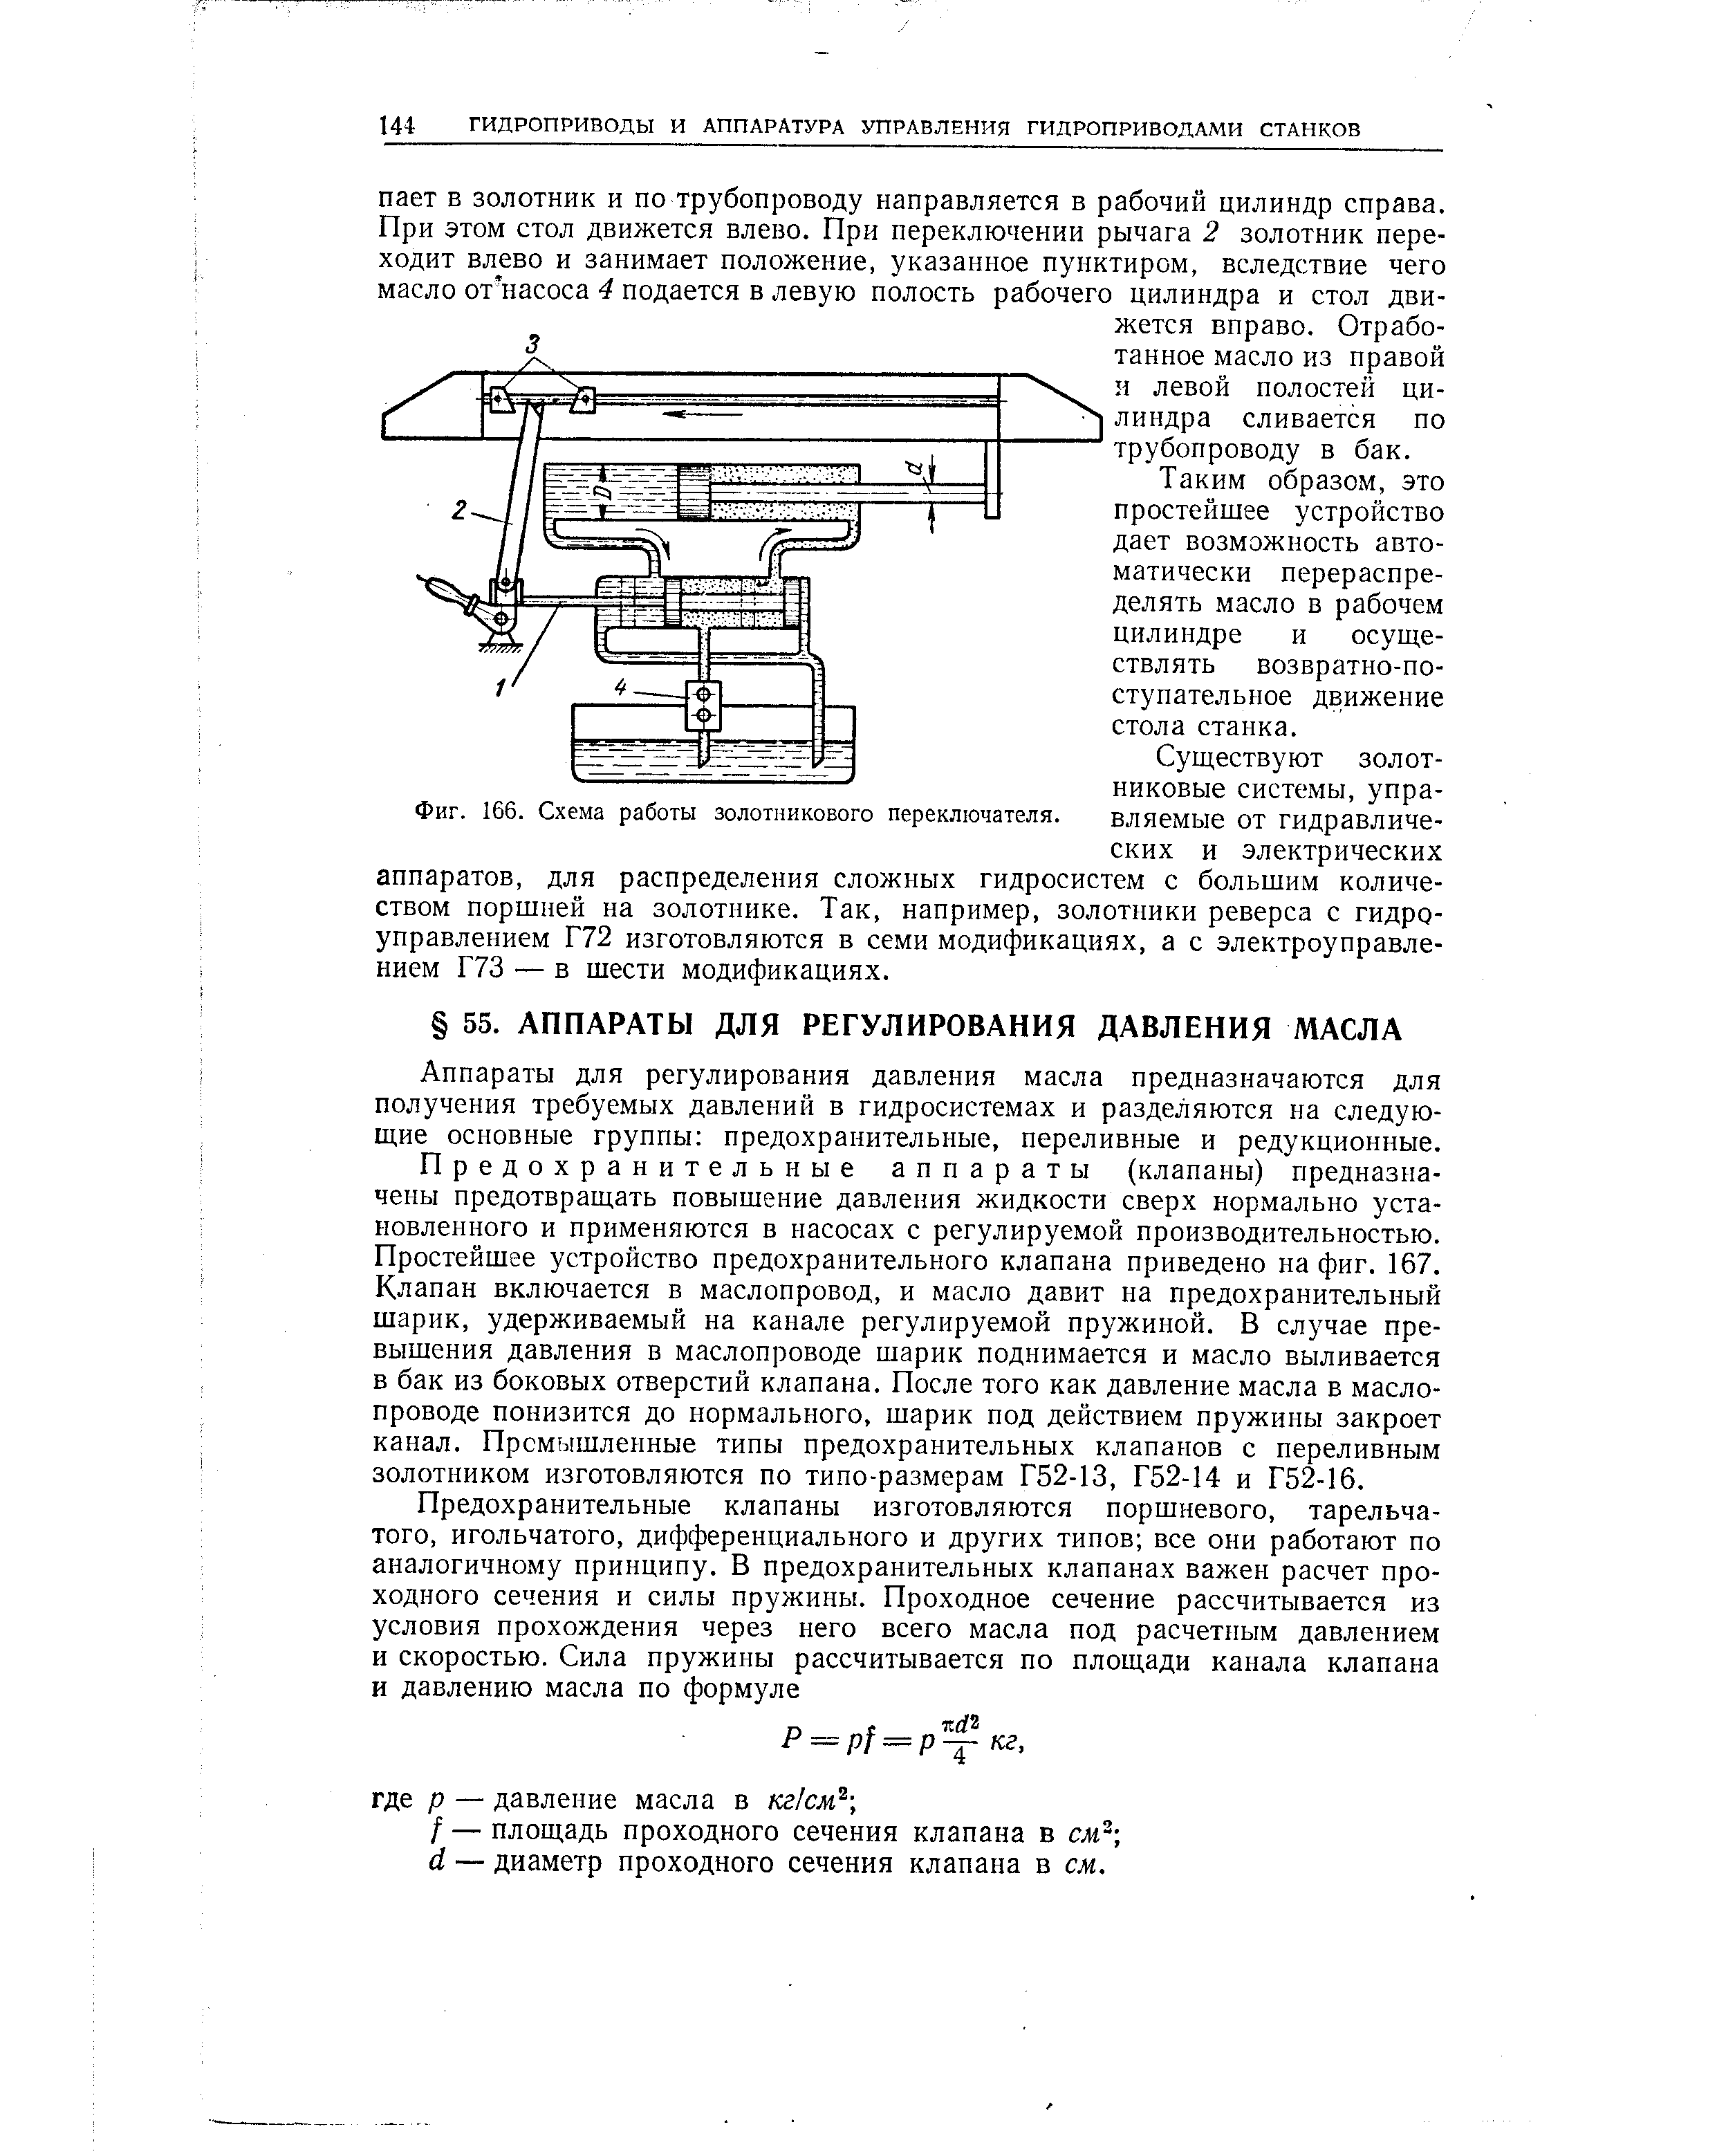 Фиг. 166. Схема работы золотникового переключателя.
